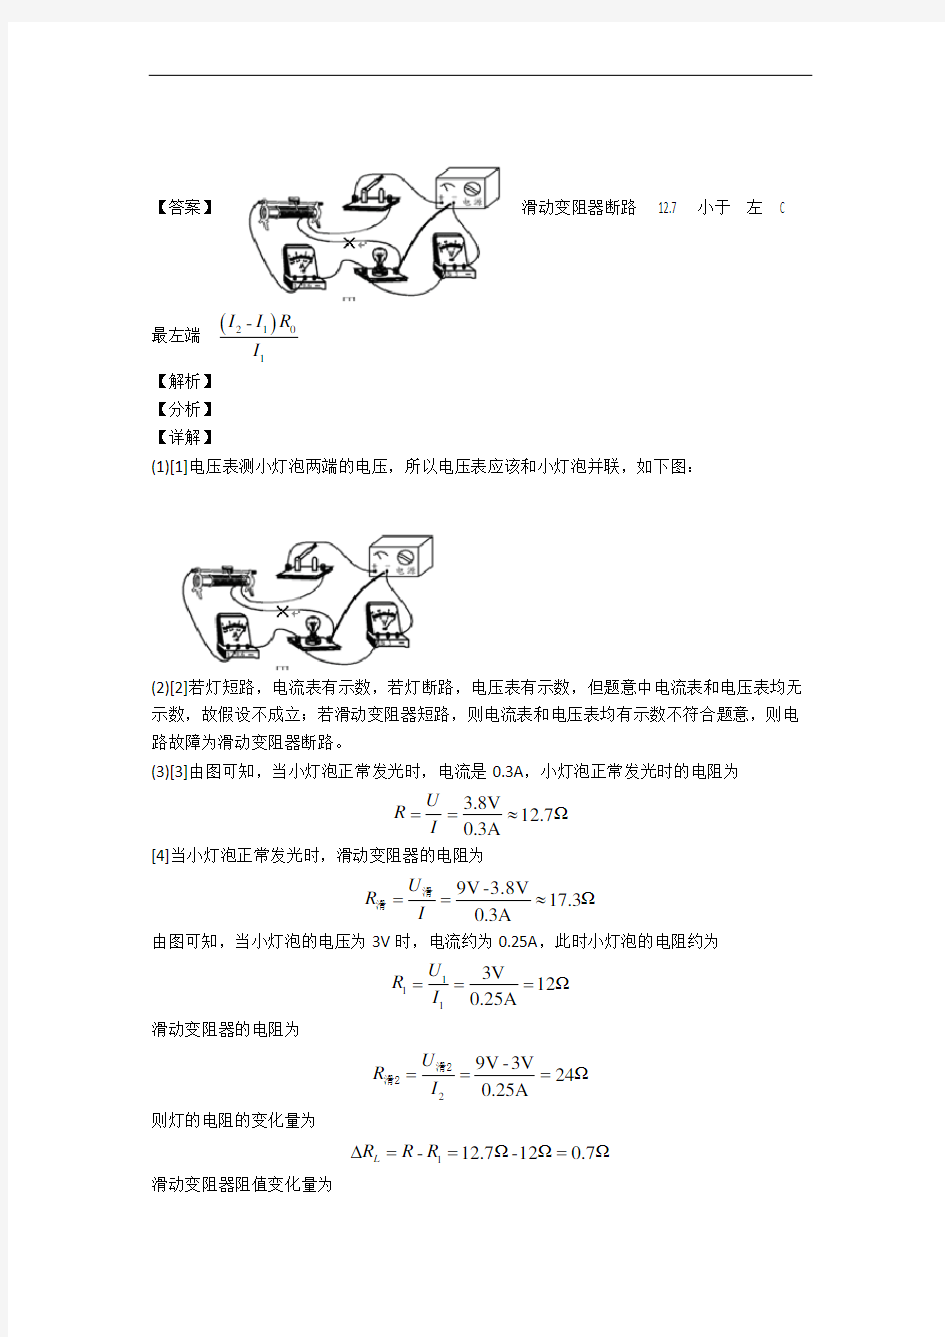 重庆市一中物理欧姆定律专题练习(解析版)